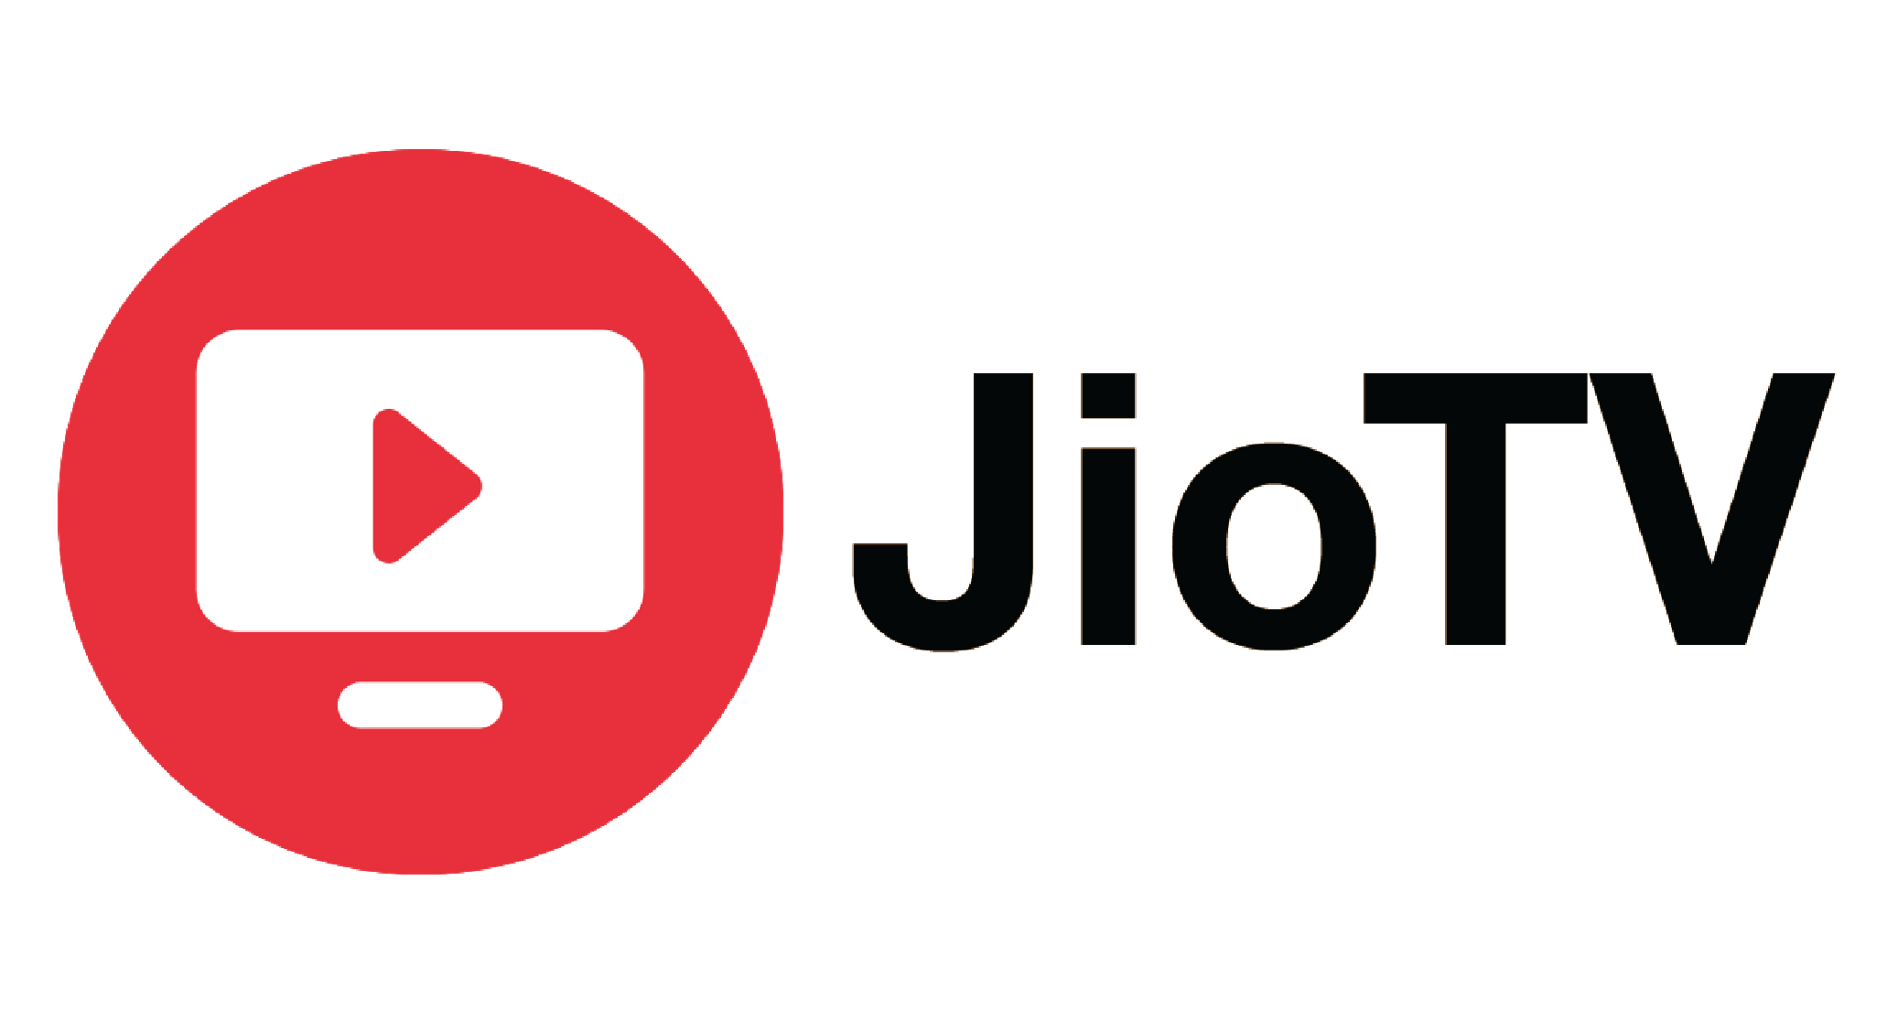 File:JioTV logo.png - Wikipedia